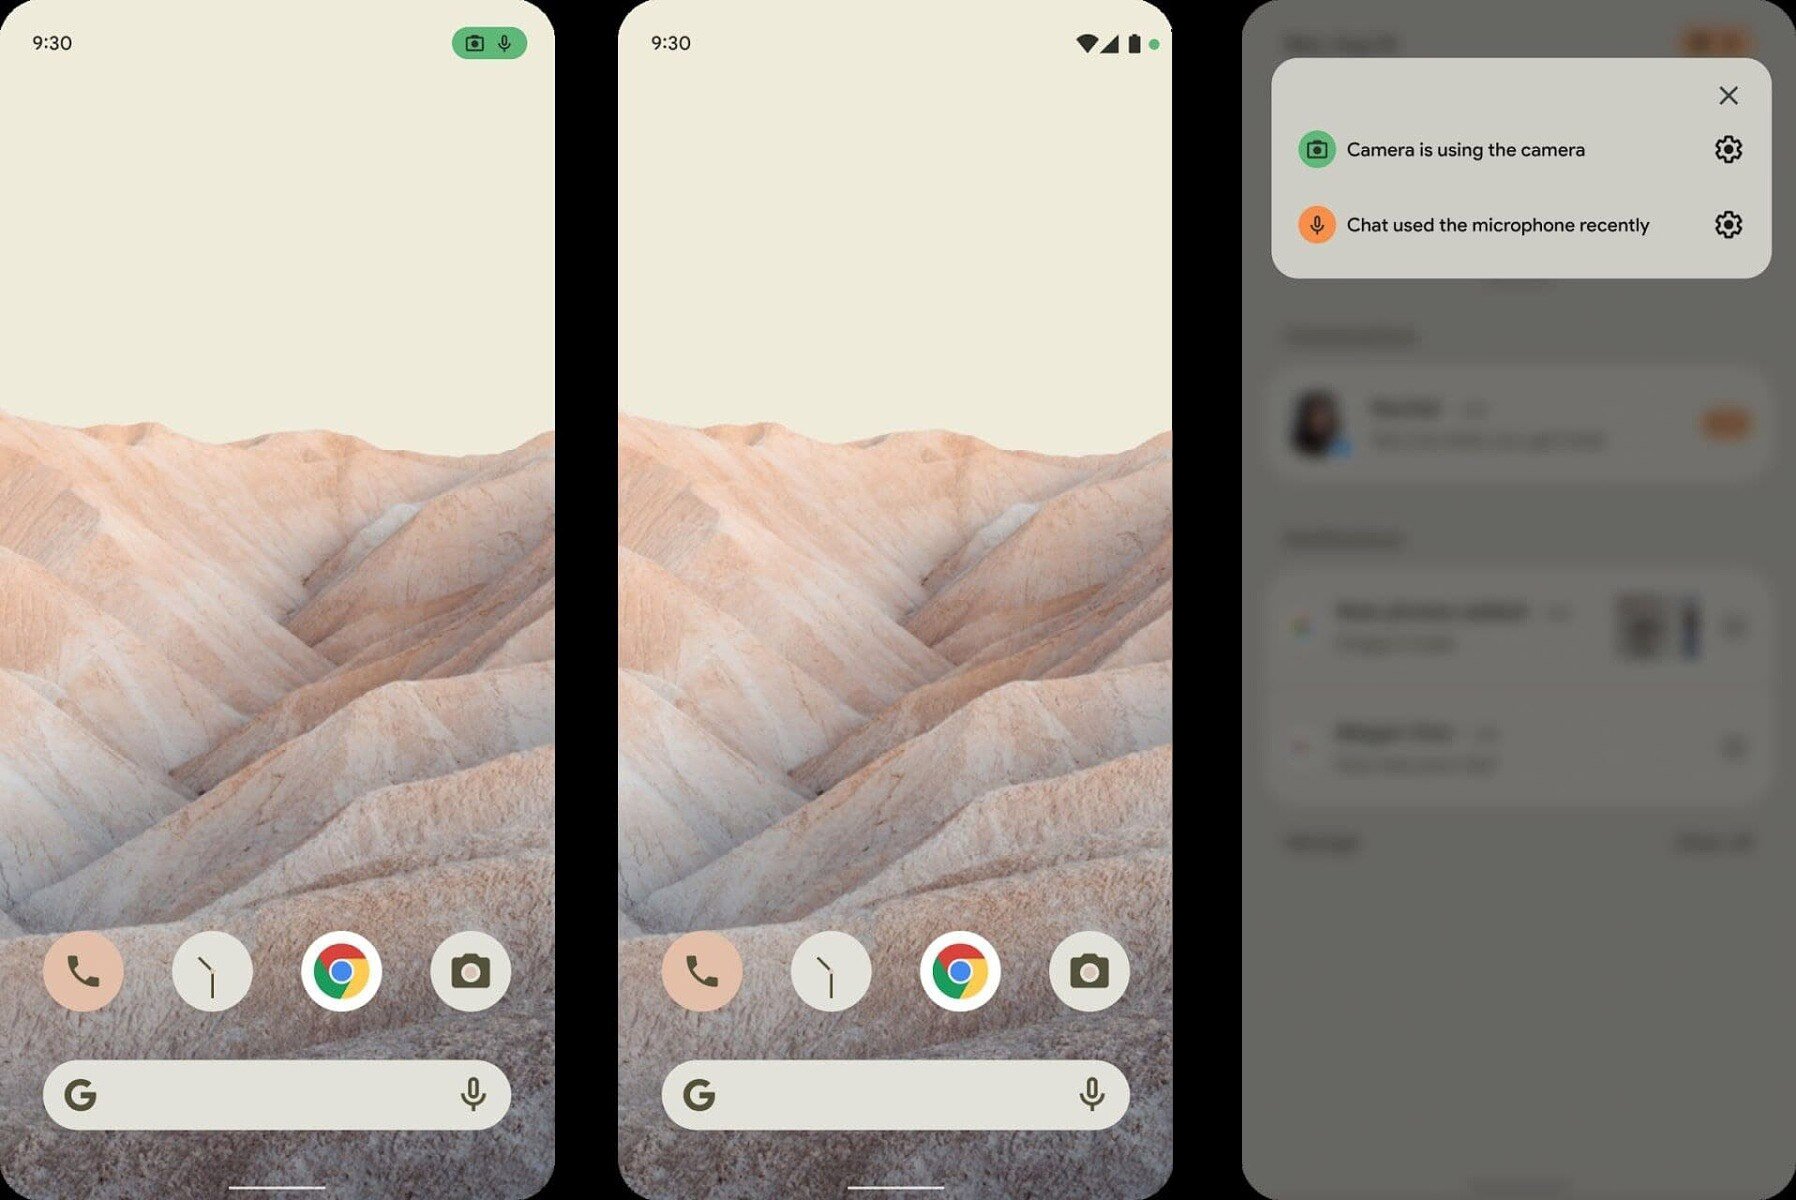 A interface do Android 12 contará com melhorias voltadas para privacidade, segundo imagens vazadas